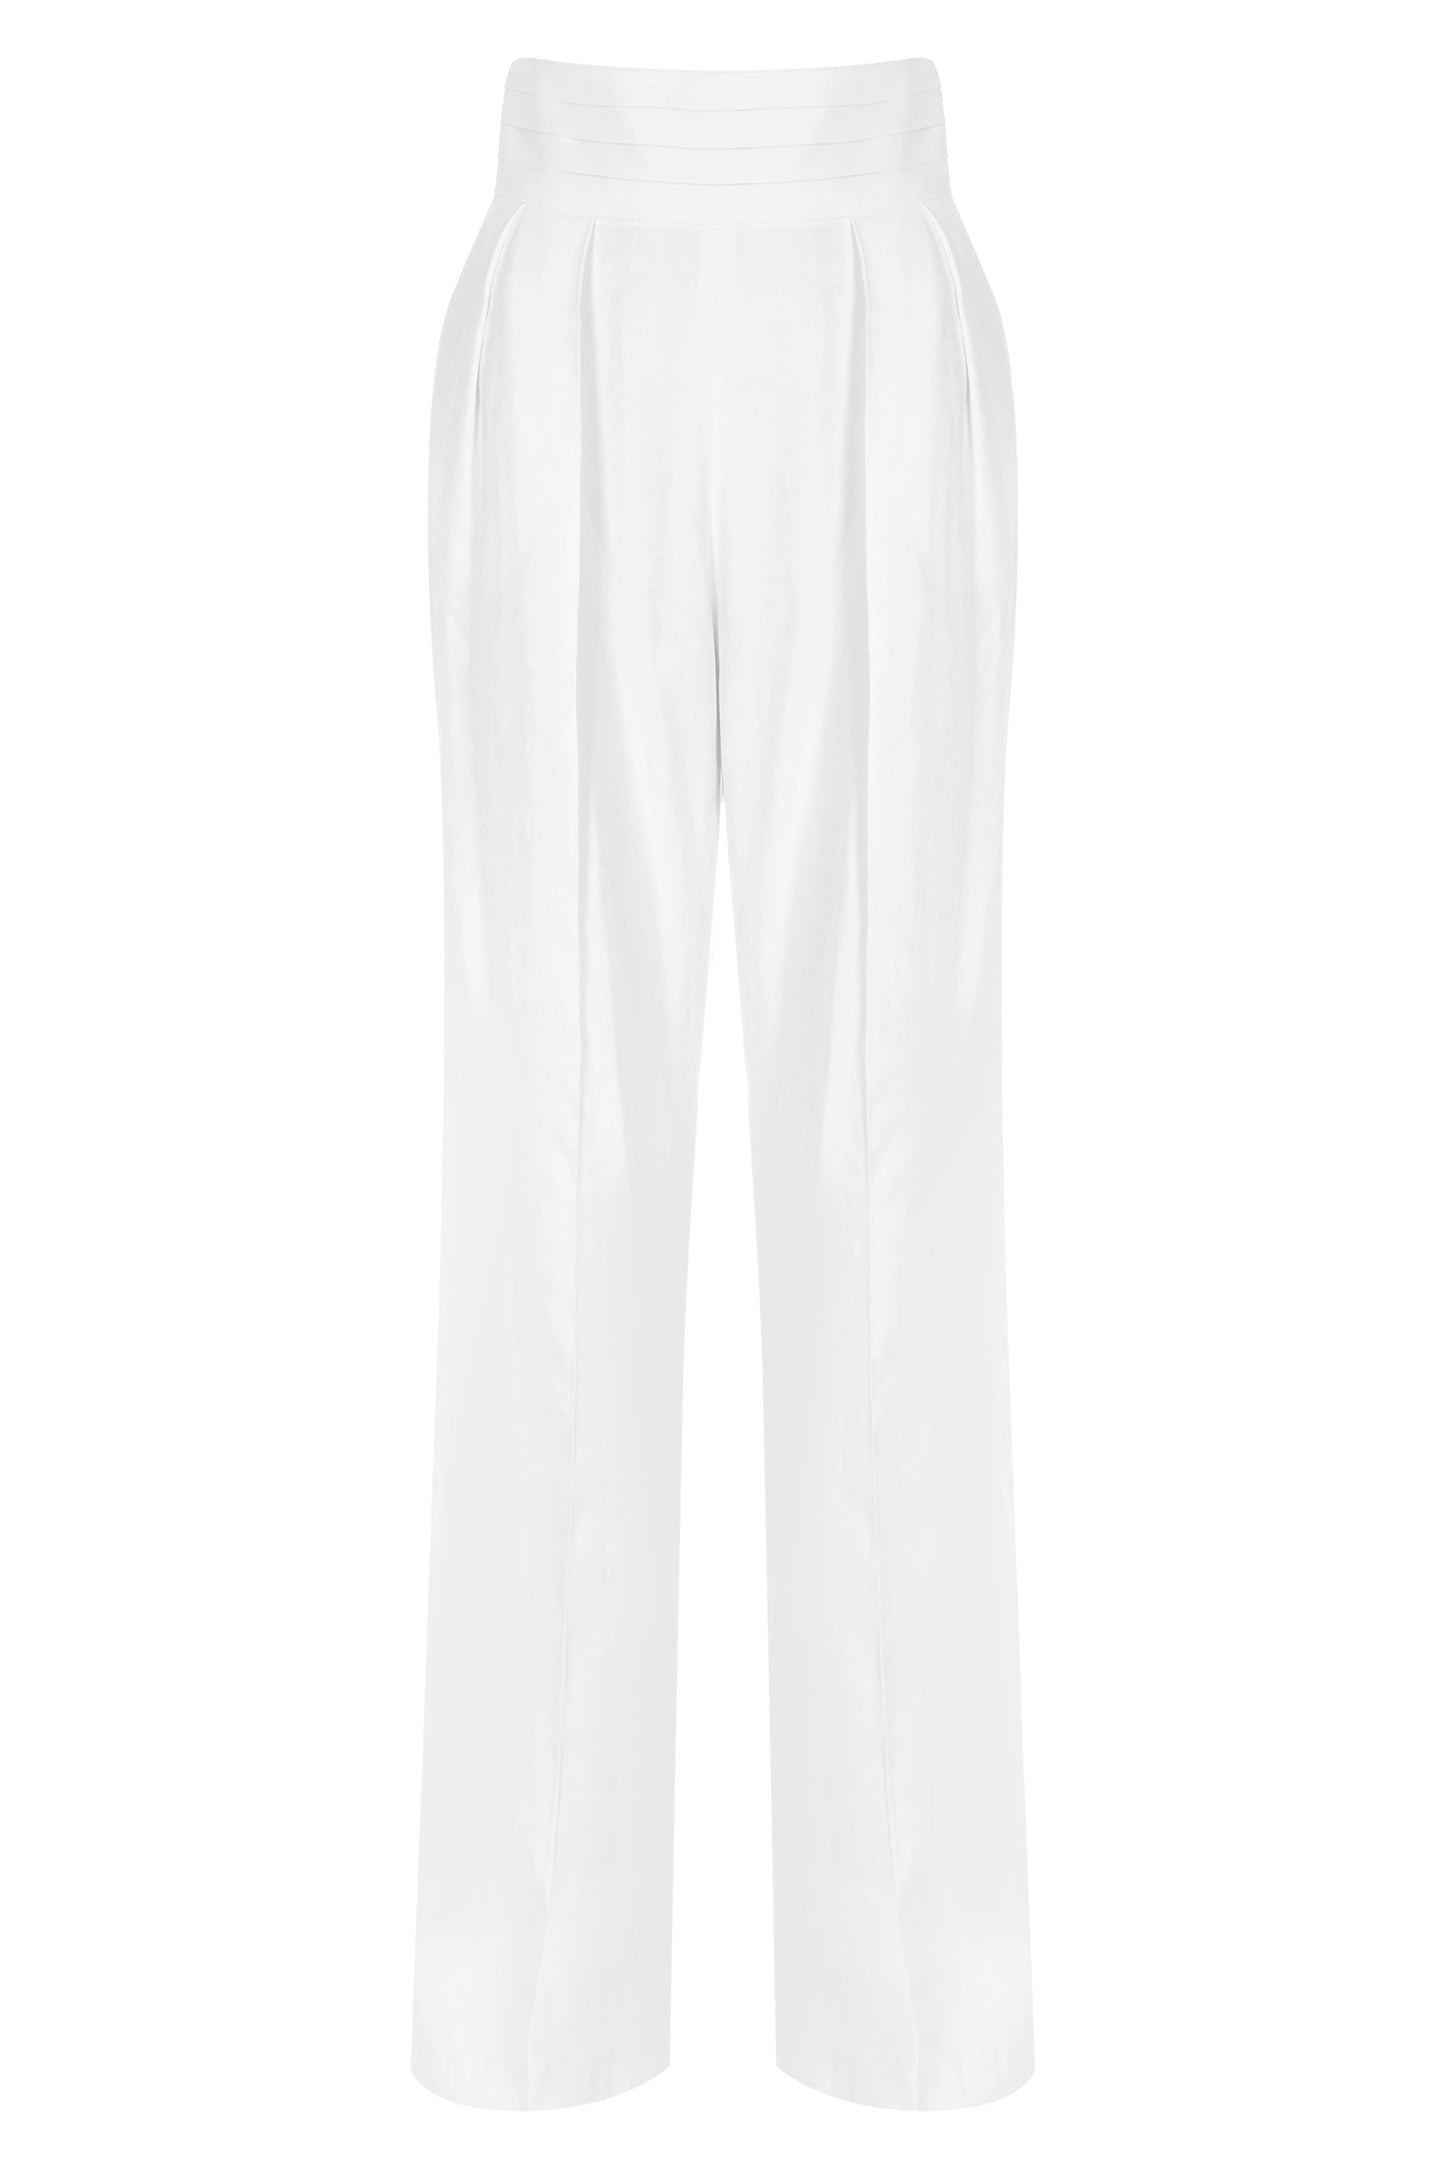 Gisele - White Pants